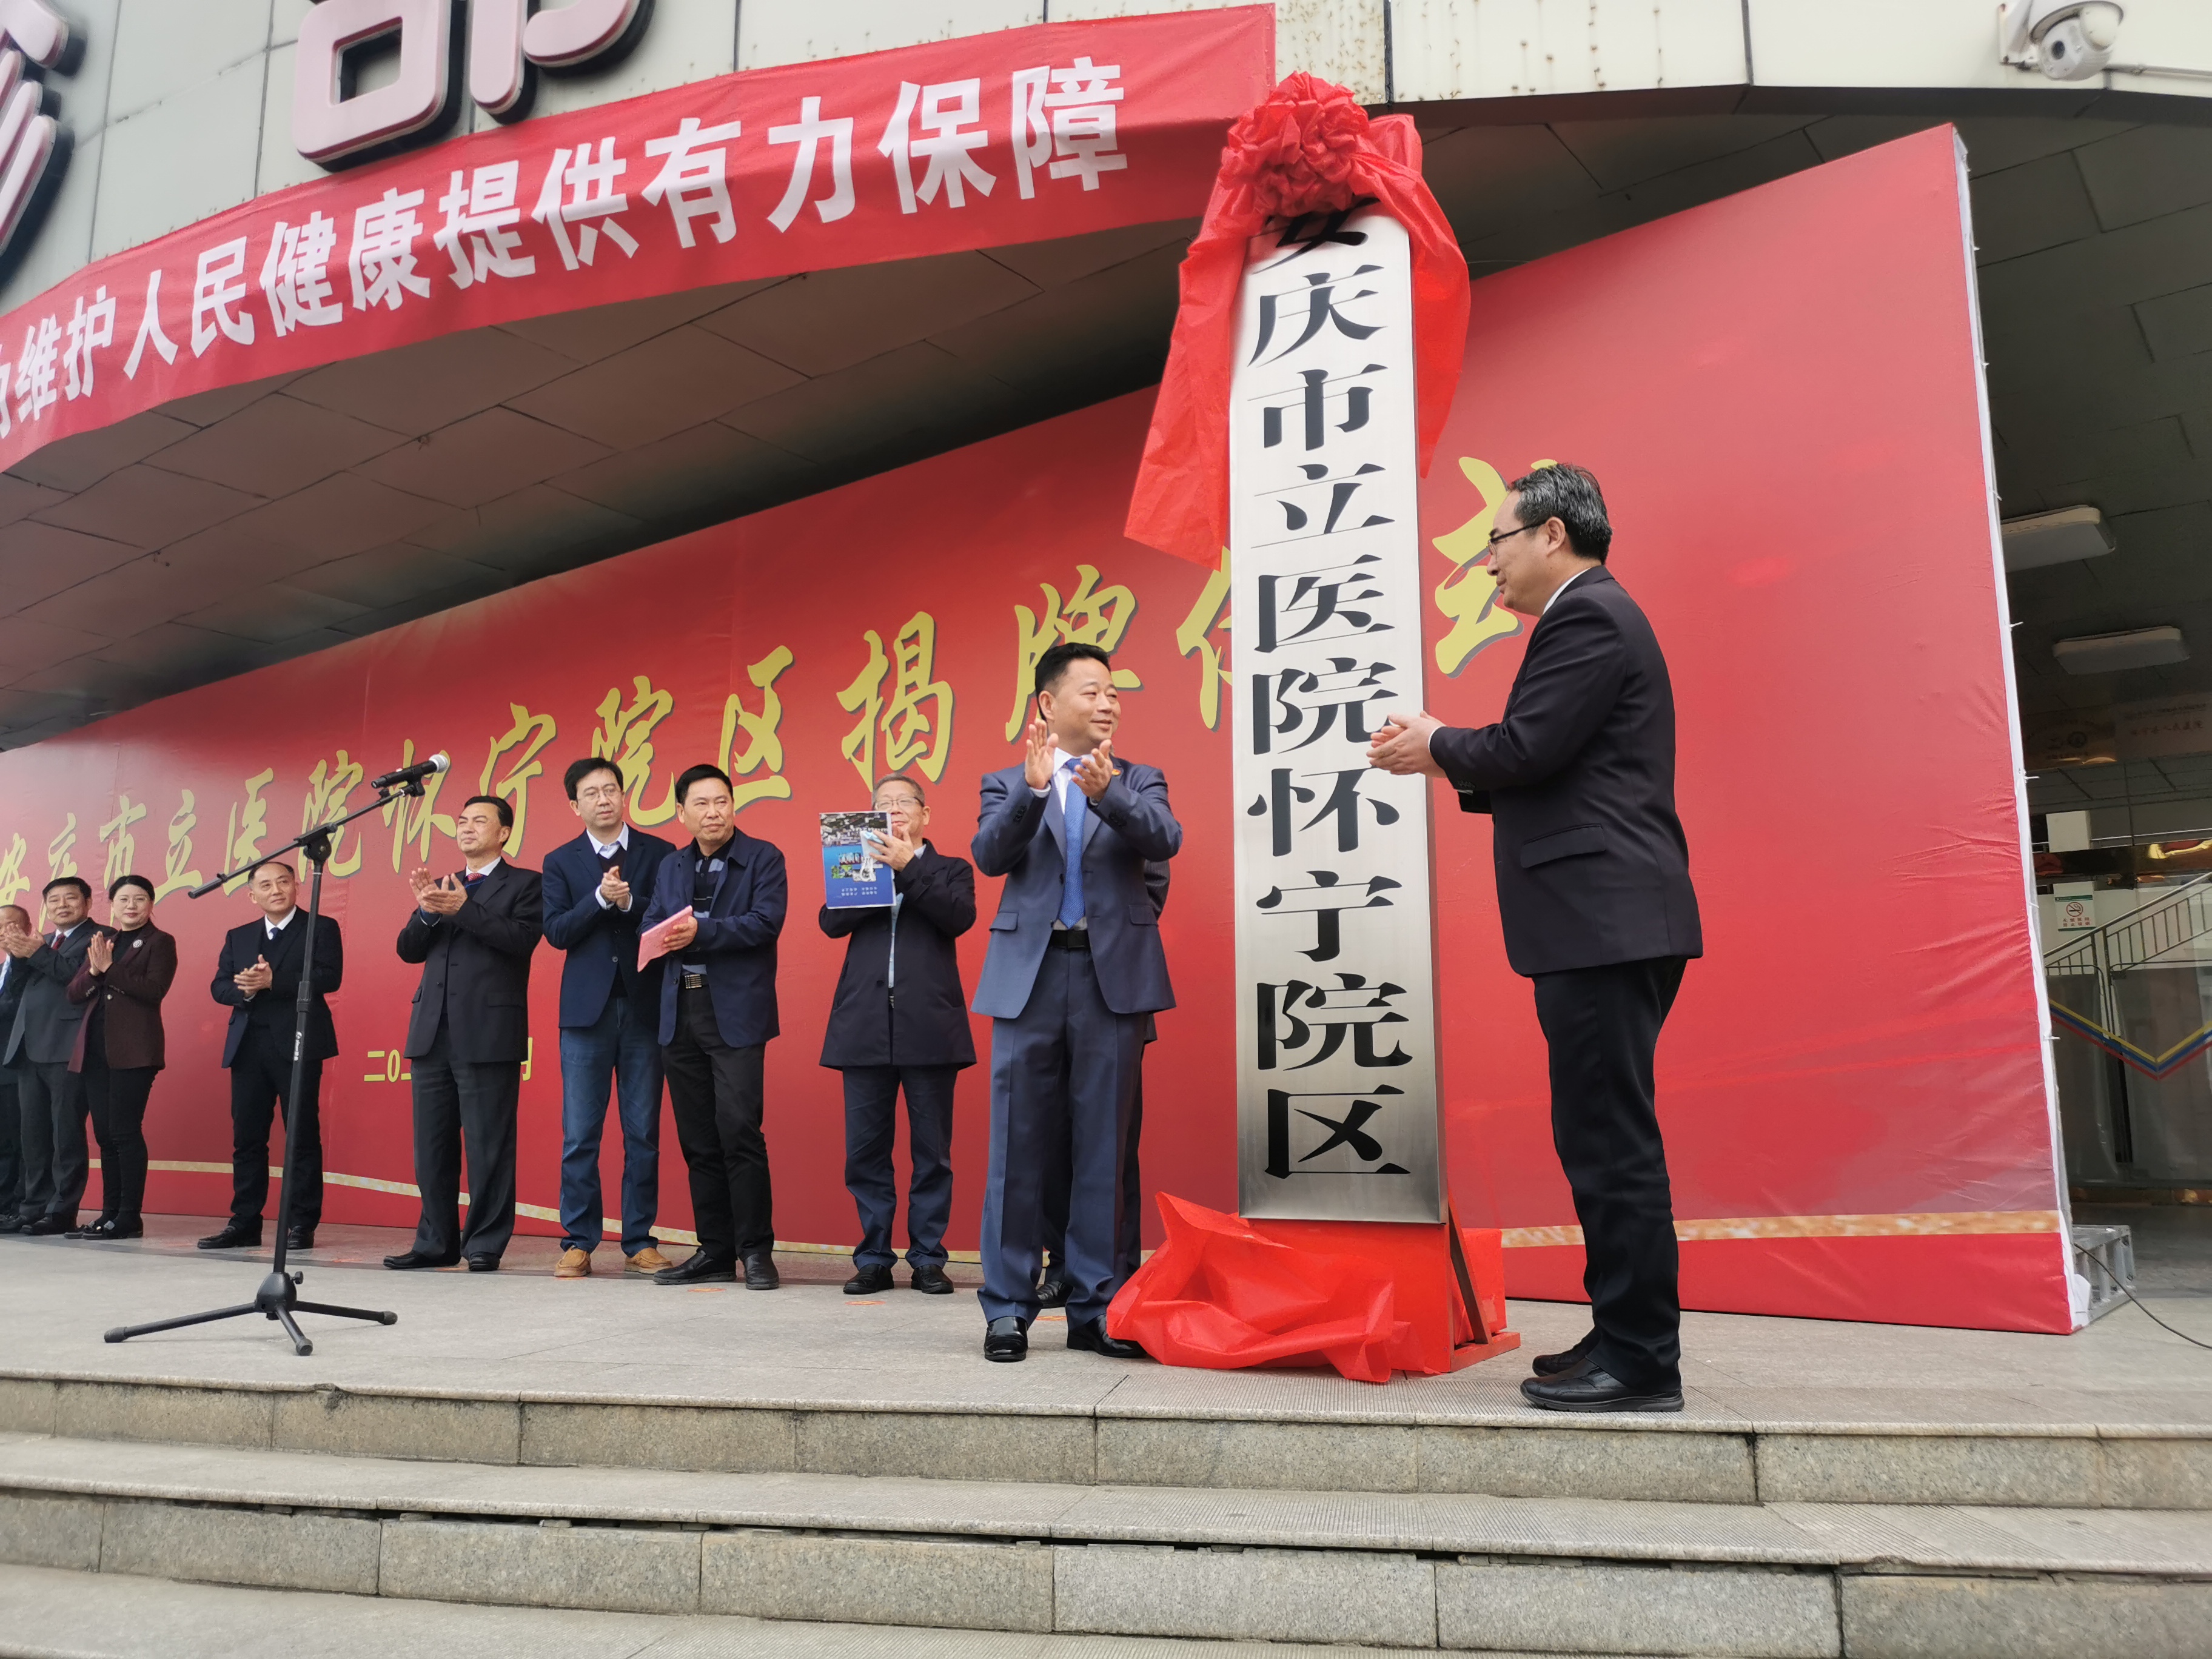 安庆市立医院与怀宁县人民政府签订战略合作协议